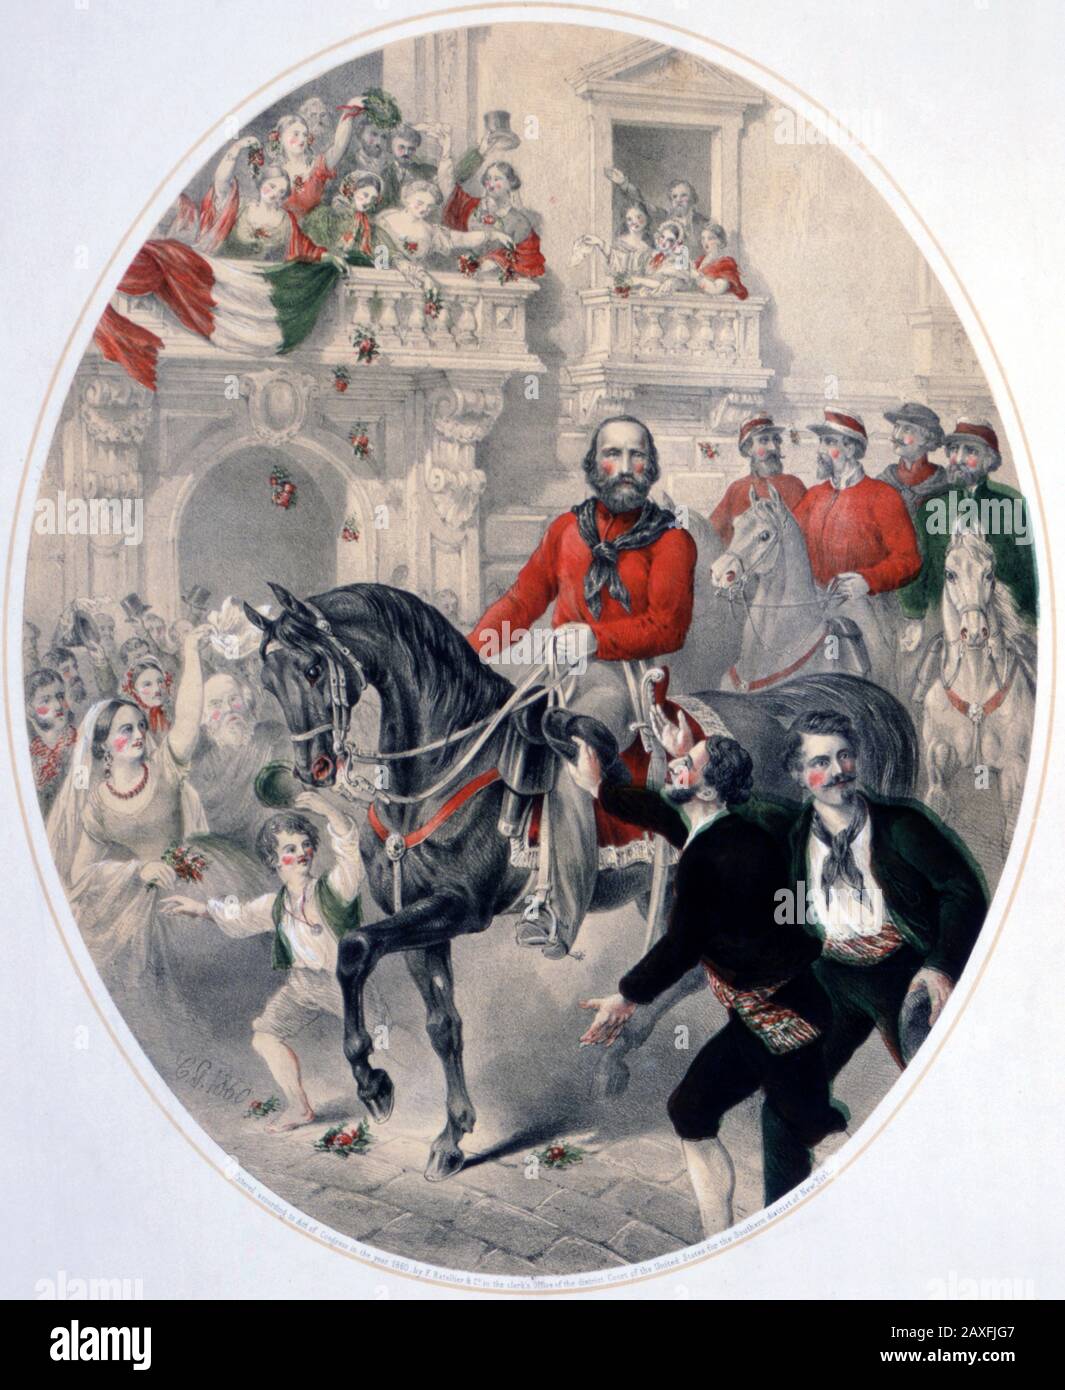 1860 : le politicien italien GIUSEPPE GARIBALDI ( Nizza 1807 - Caprera 1882 ) entre à NAPLES , Italie . Gravure de Ratellier et George Ward Nichols , New York , USA - POLISO - POLITICA - POLITIC - Unita' d'ITALIA - Risorgimento - foto storiche - foto storica - HISTOIRE - incesone - portrait - ritratto - barbe - barba - Naples - cheval - cavallo - ingresso trionfale © Archivio GBB / Agenzia Banque D'Images